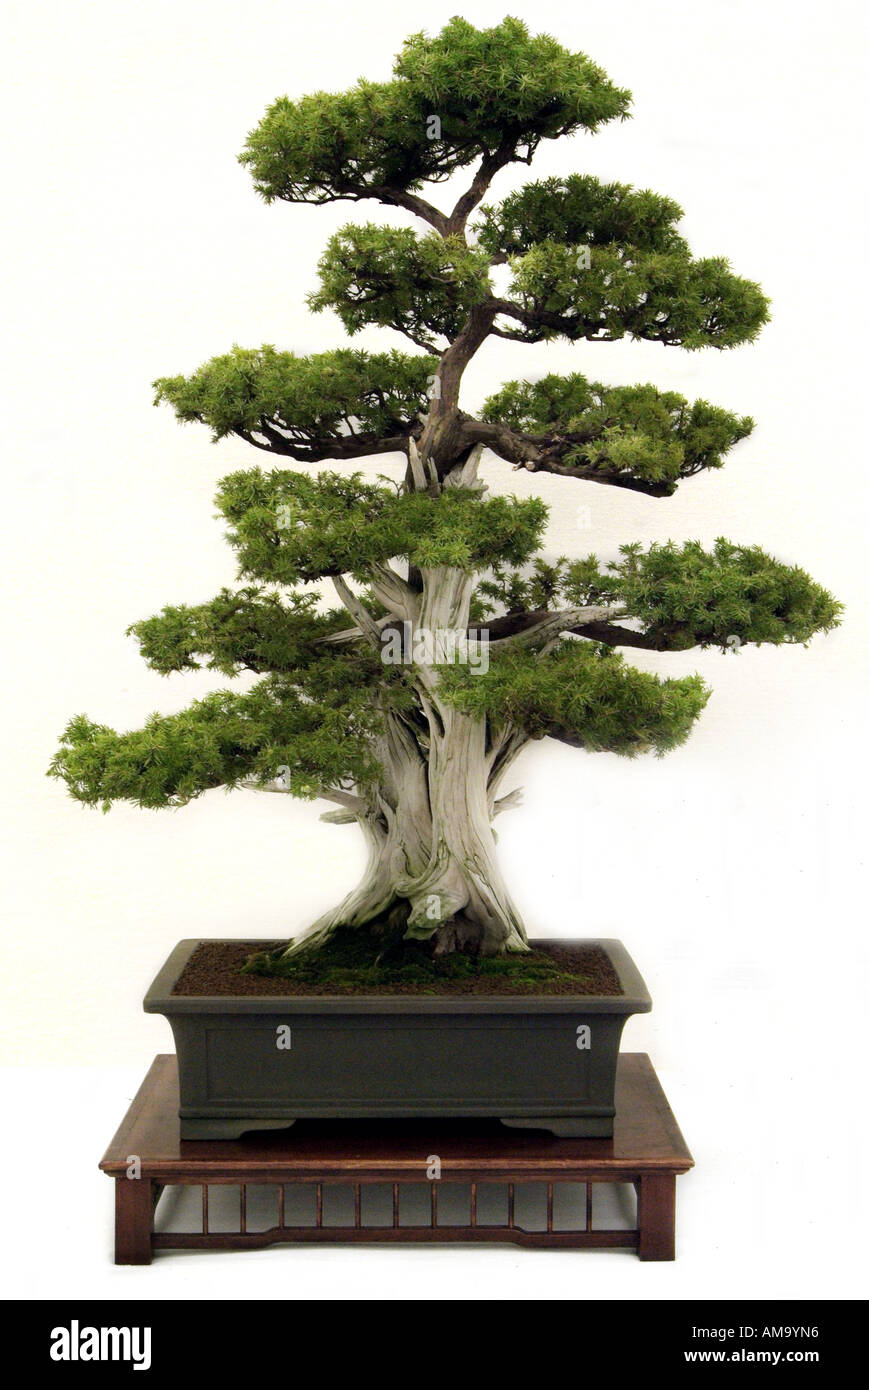 Genévrier bonzai bonsai Japonais Chinois Chine Japon orient orient